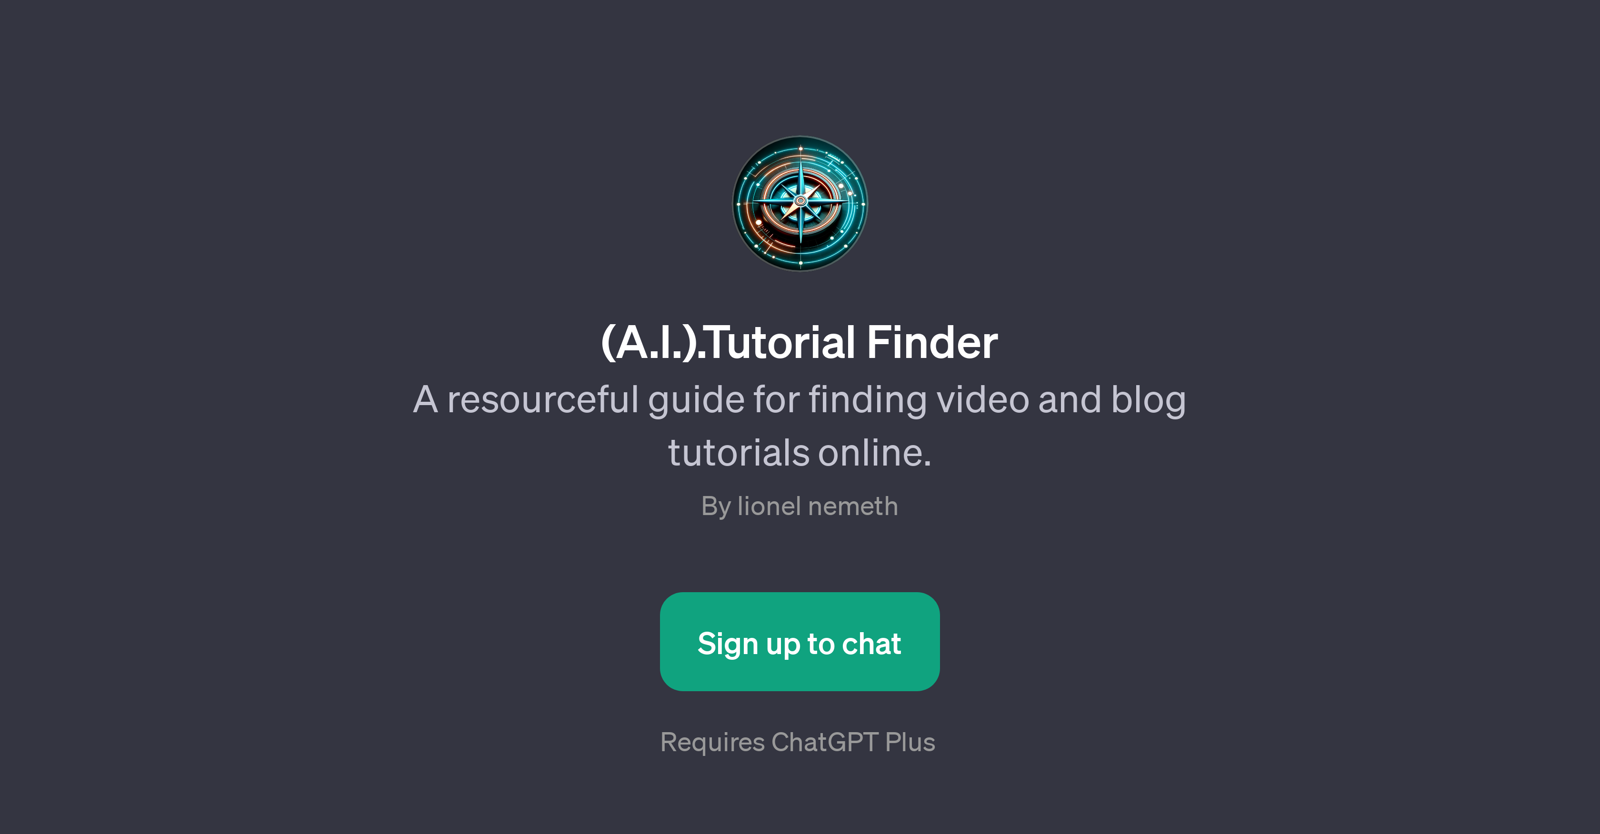 A.I. Tutorial Finder website